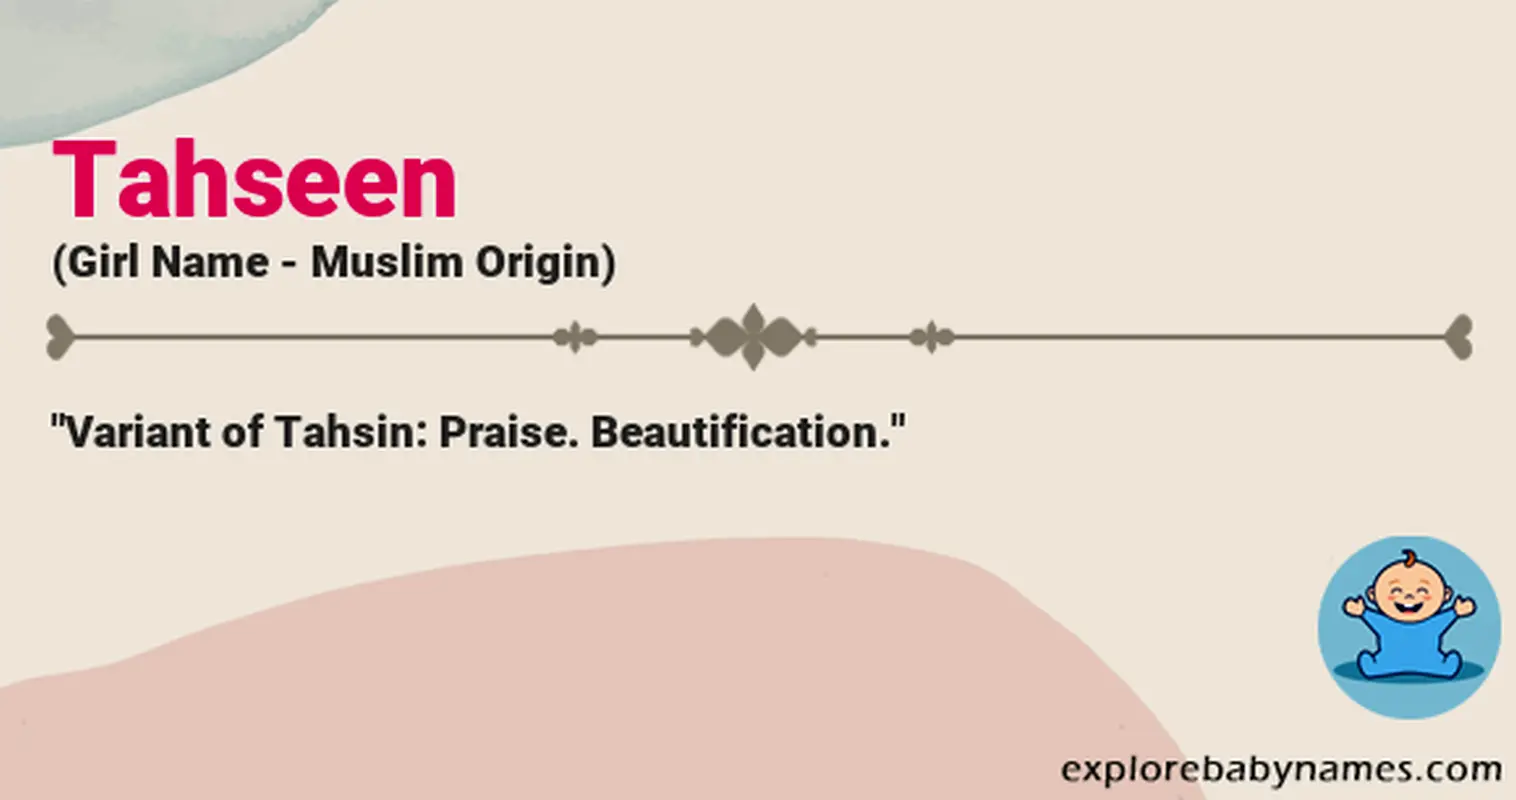 Meaning of Tahseen